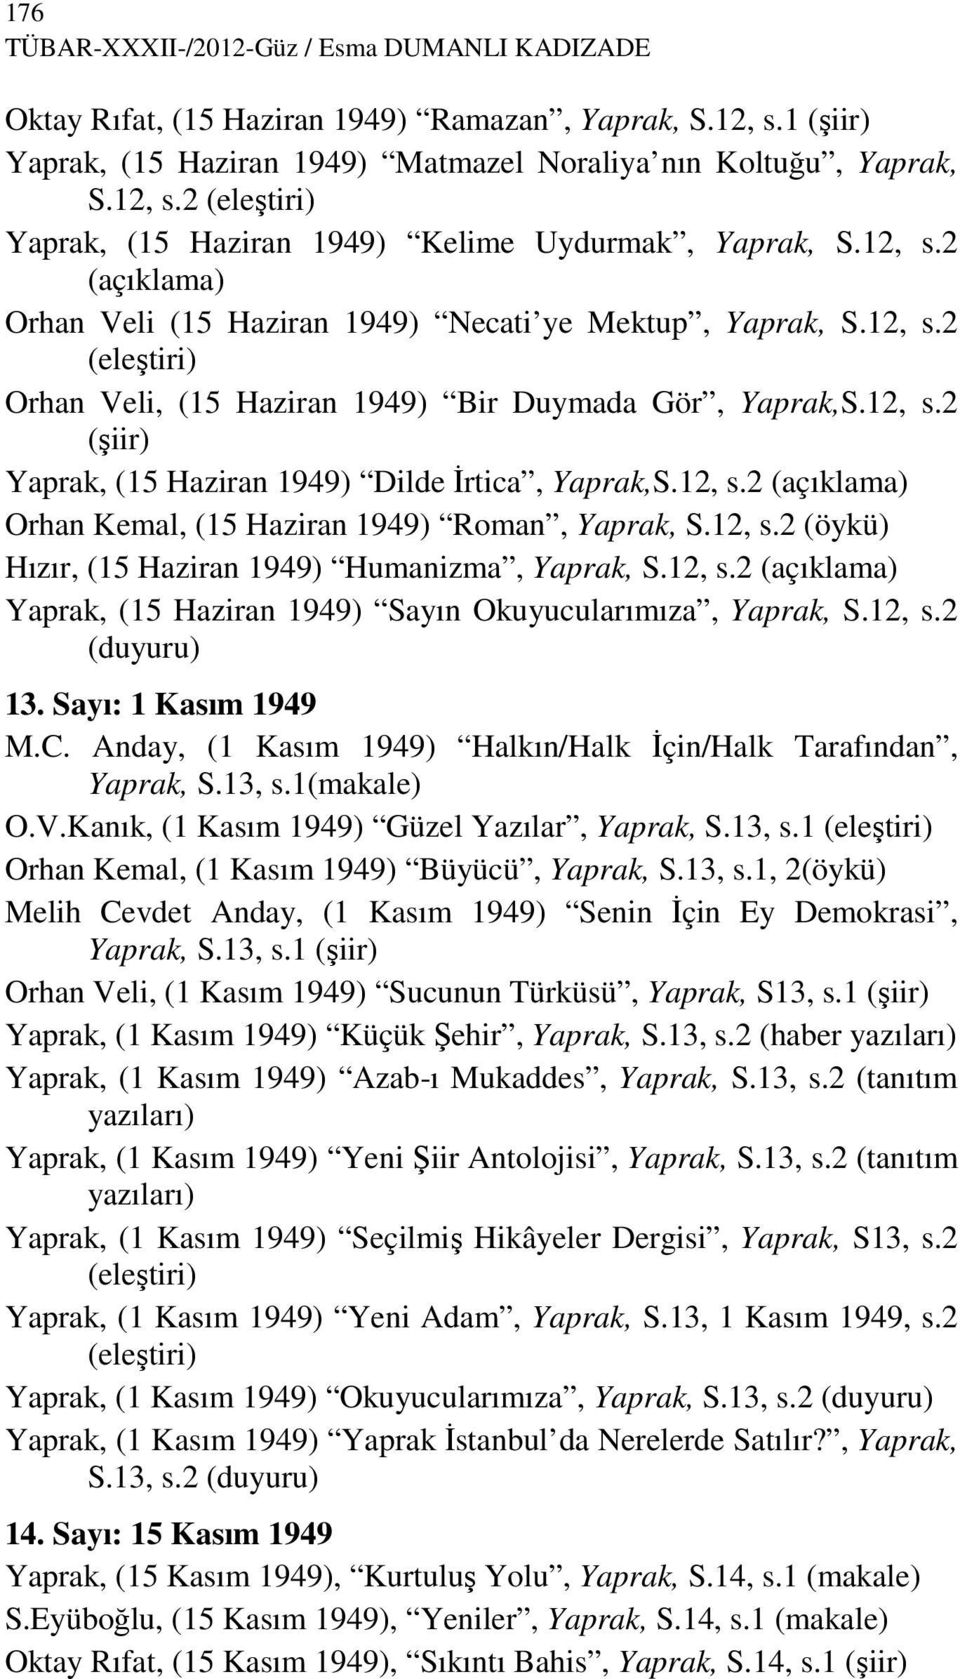 12, s.2 (açıklama) Orhan Kemal, (15 Haziran 1949) Roman, Yaprak, S.12, s.2 (öykü) Hızır, (15 Haziran 1949) Humanizma, Yaprak, S.12, s.2 (açıklama) Yaprak, (15 Haziran 1949) Sayın Okuyucularımıza, Yaprak, S.